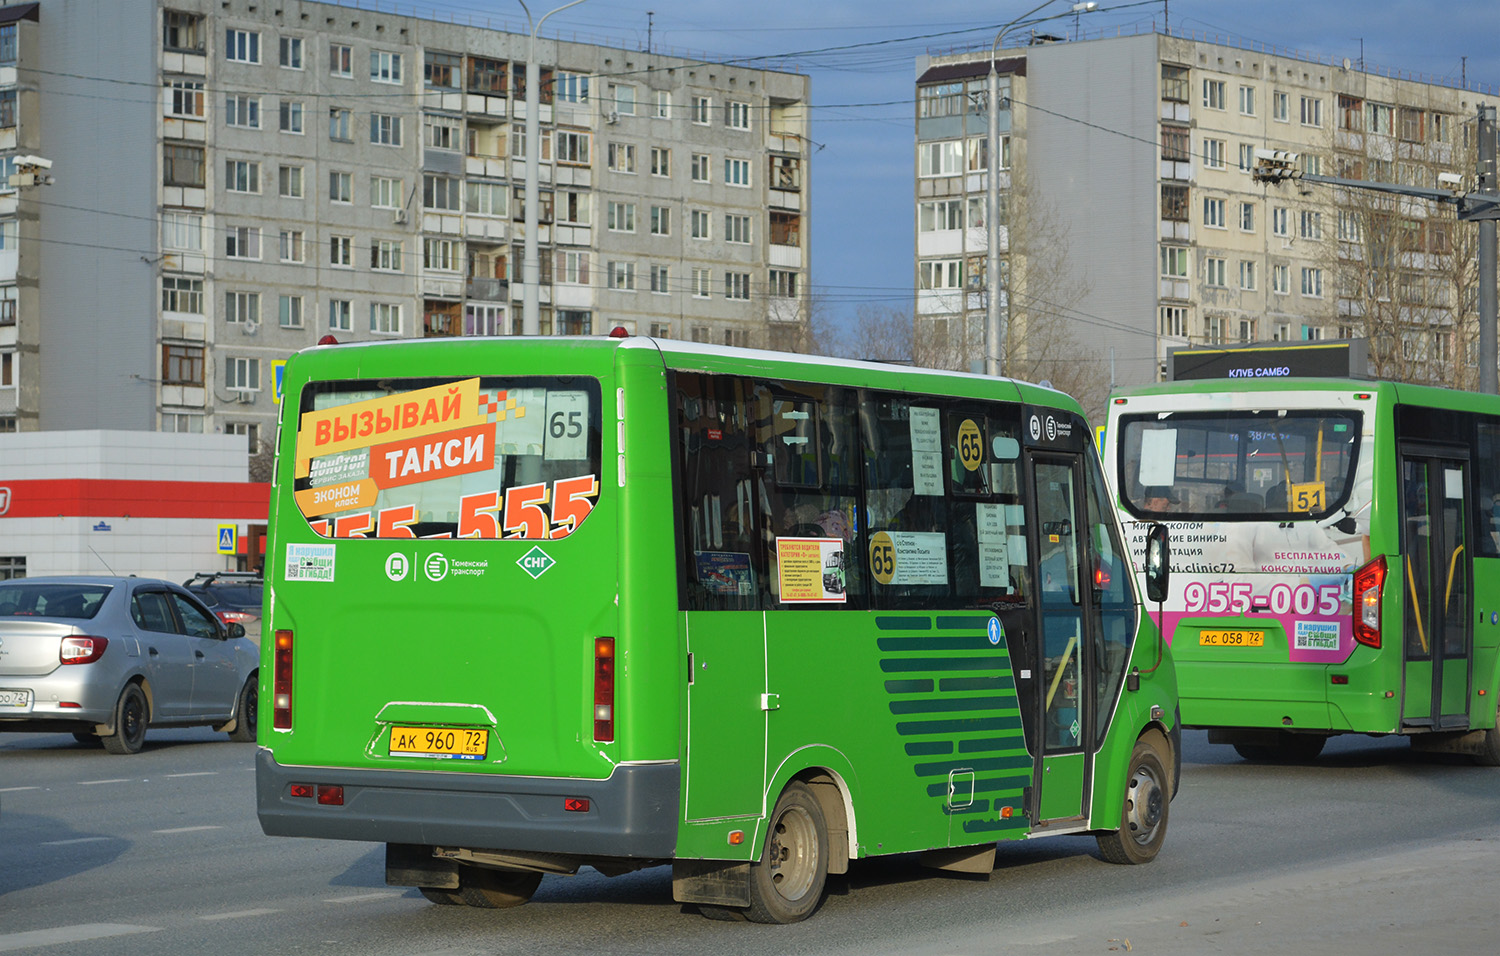 Тюменская область, ГАЗ-A64R45 Next № АК 960 72